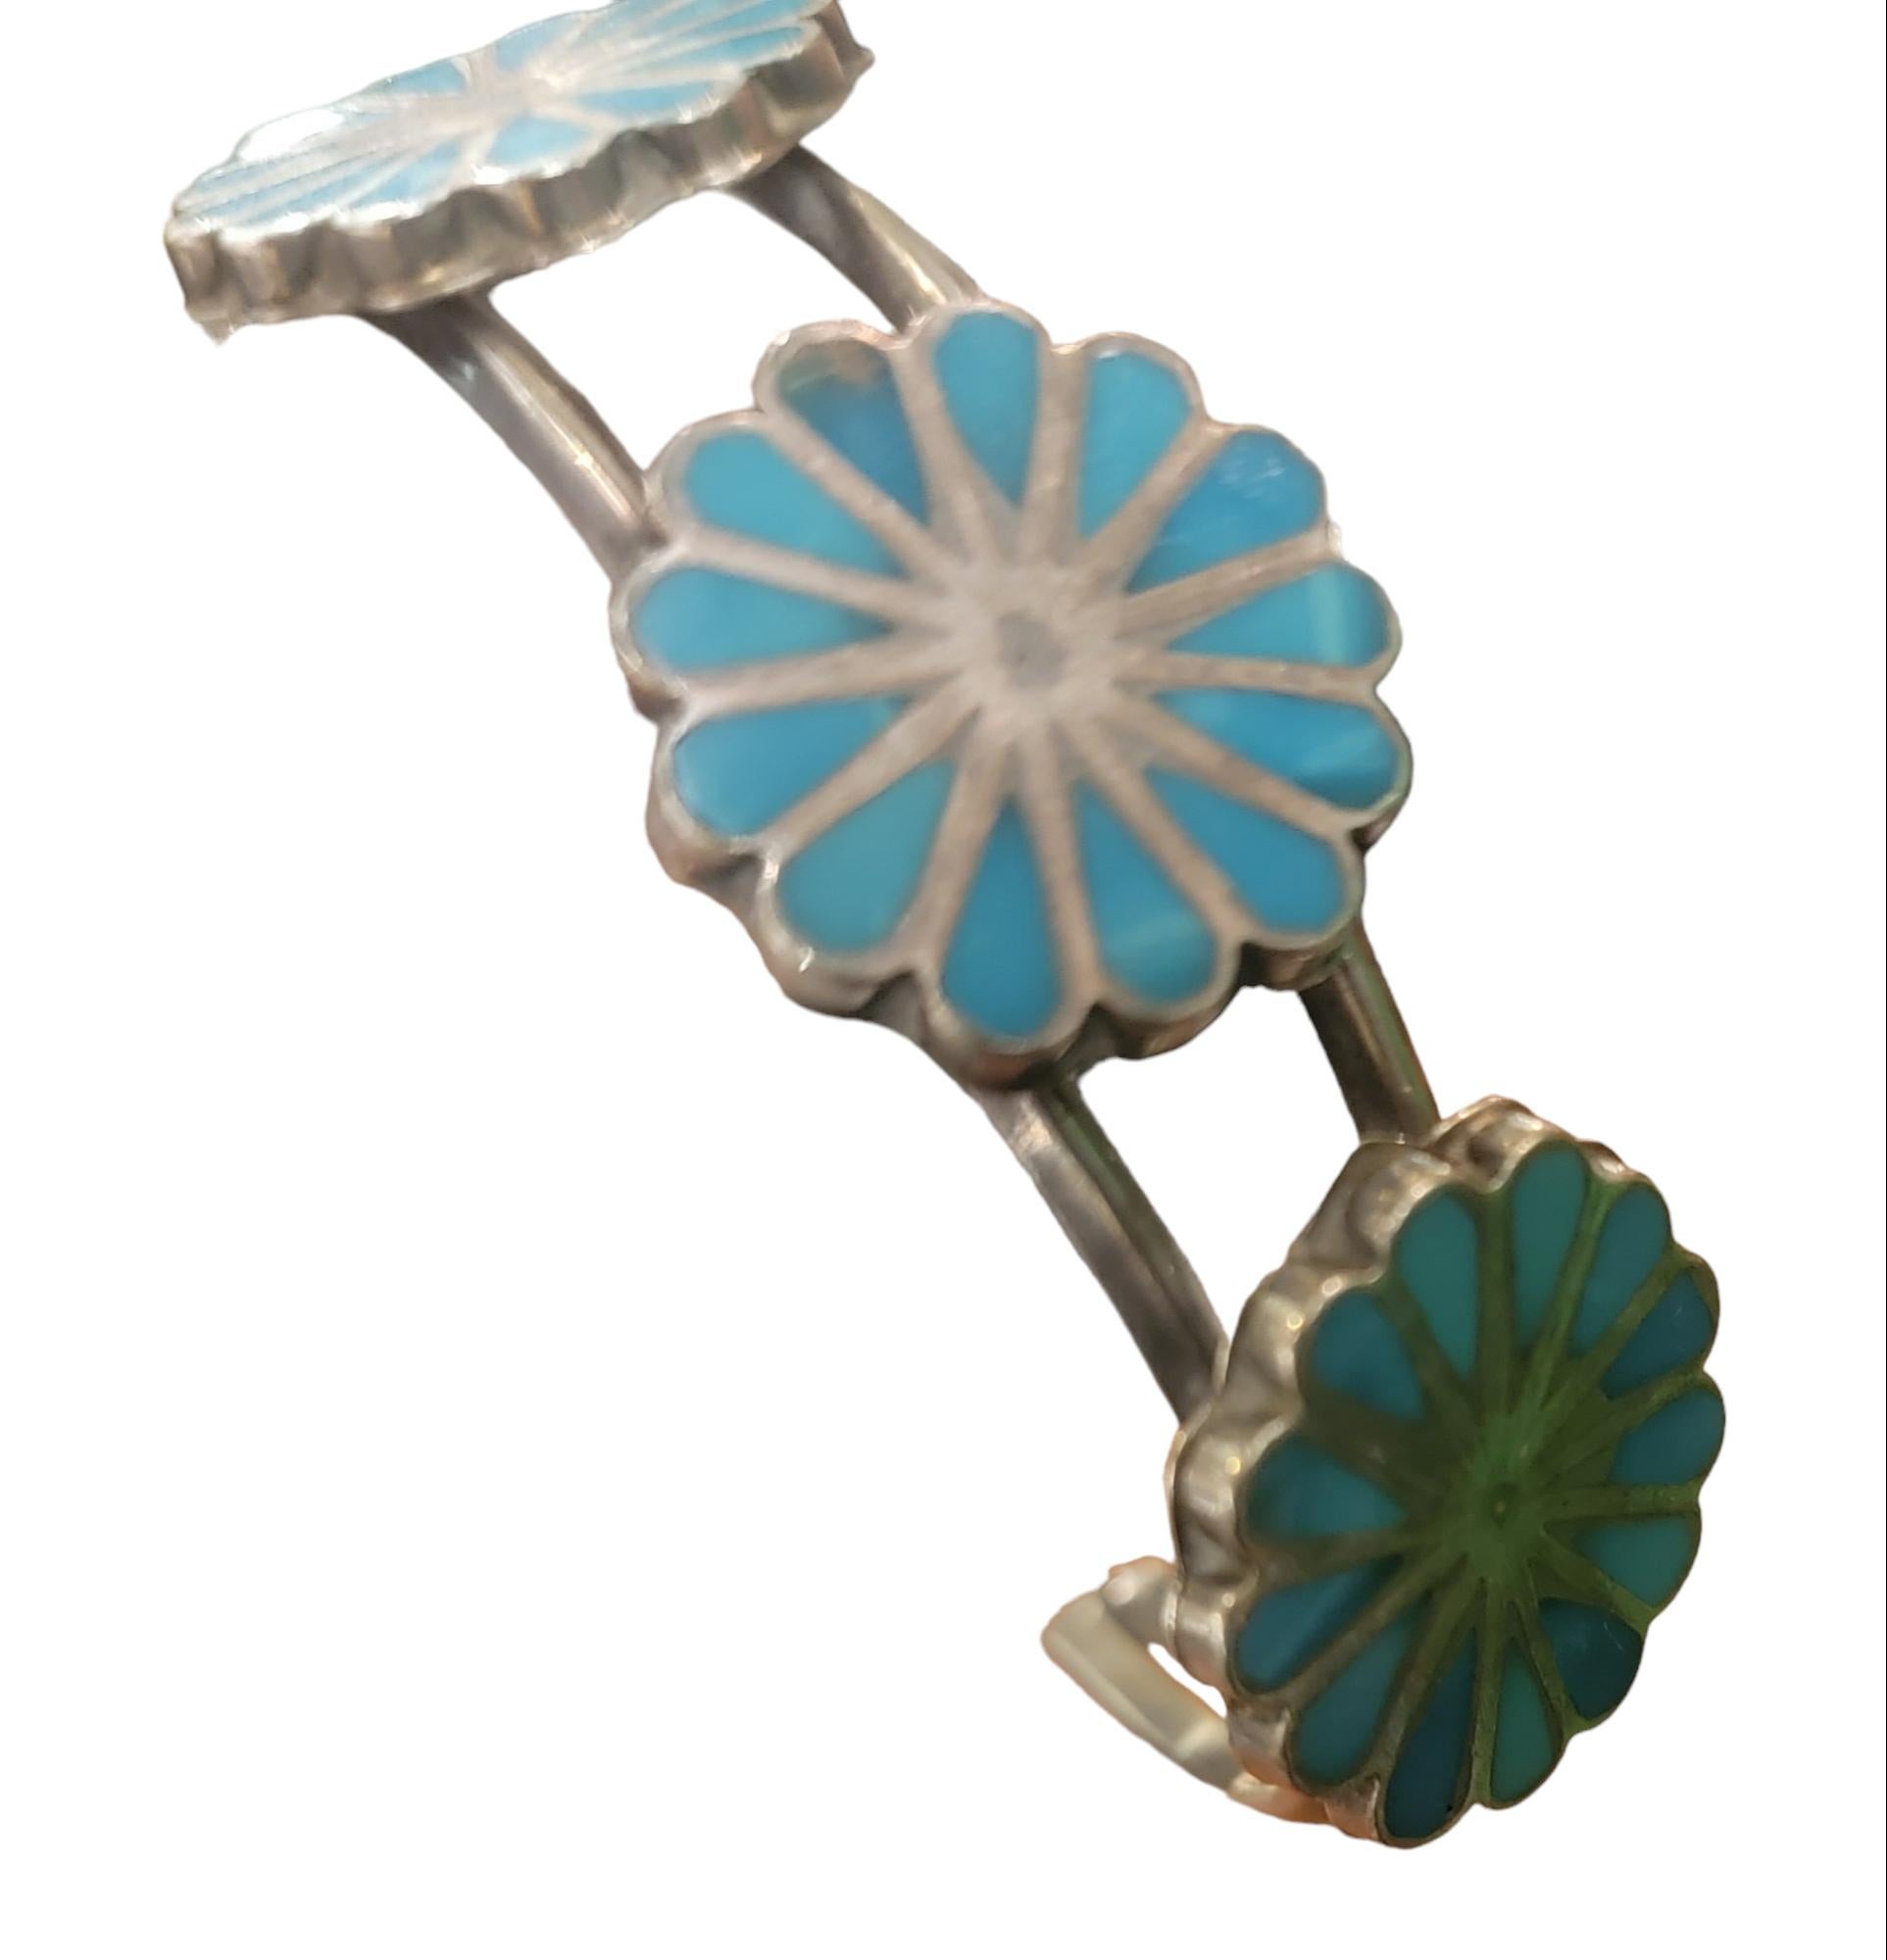 1970 Zuni Inlay Navajo Sterling Türkis Manschettenknopf Armband. 
Diese wunderbare Manschette Sterling-Armband hat Türkis Inlay. Die Sonne soll für Wärme, Wachstum, Leben und alles Gute in dieser Welt sorgen. 
Korallen gelten als Zen-Gegenstand und